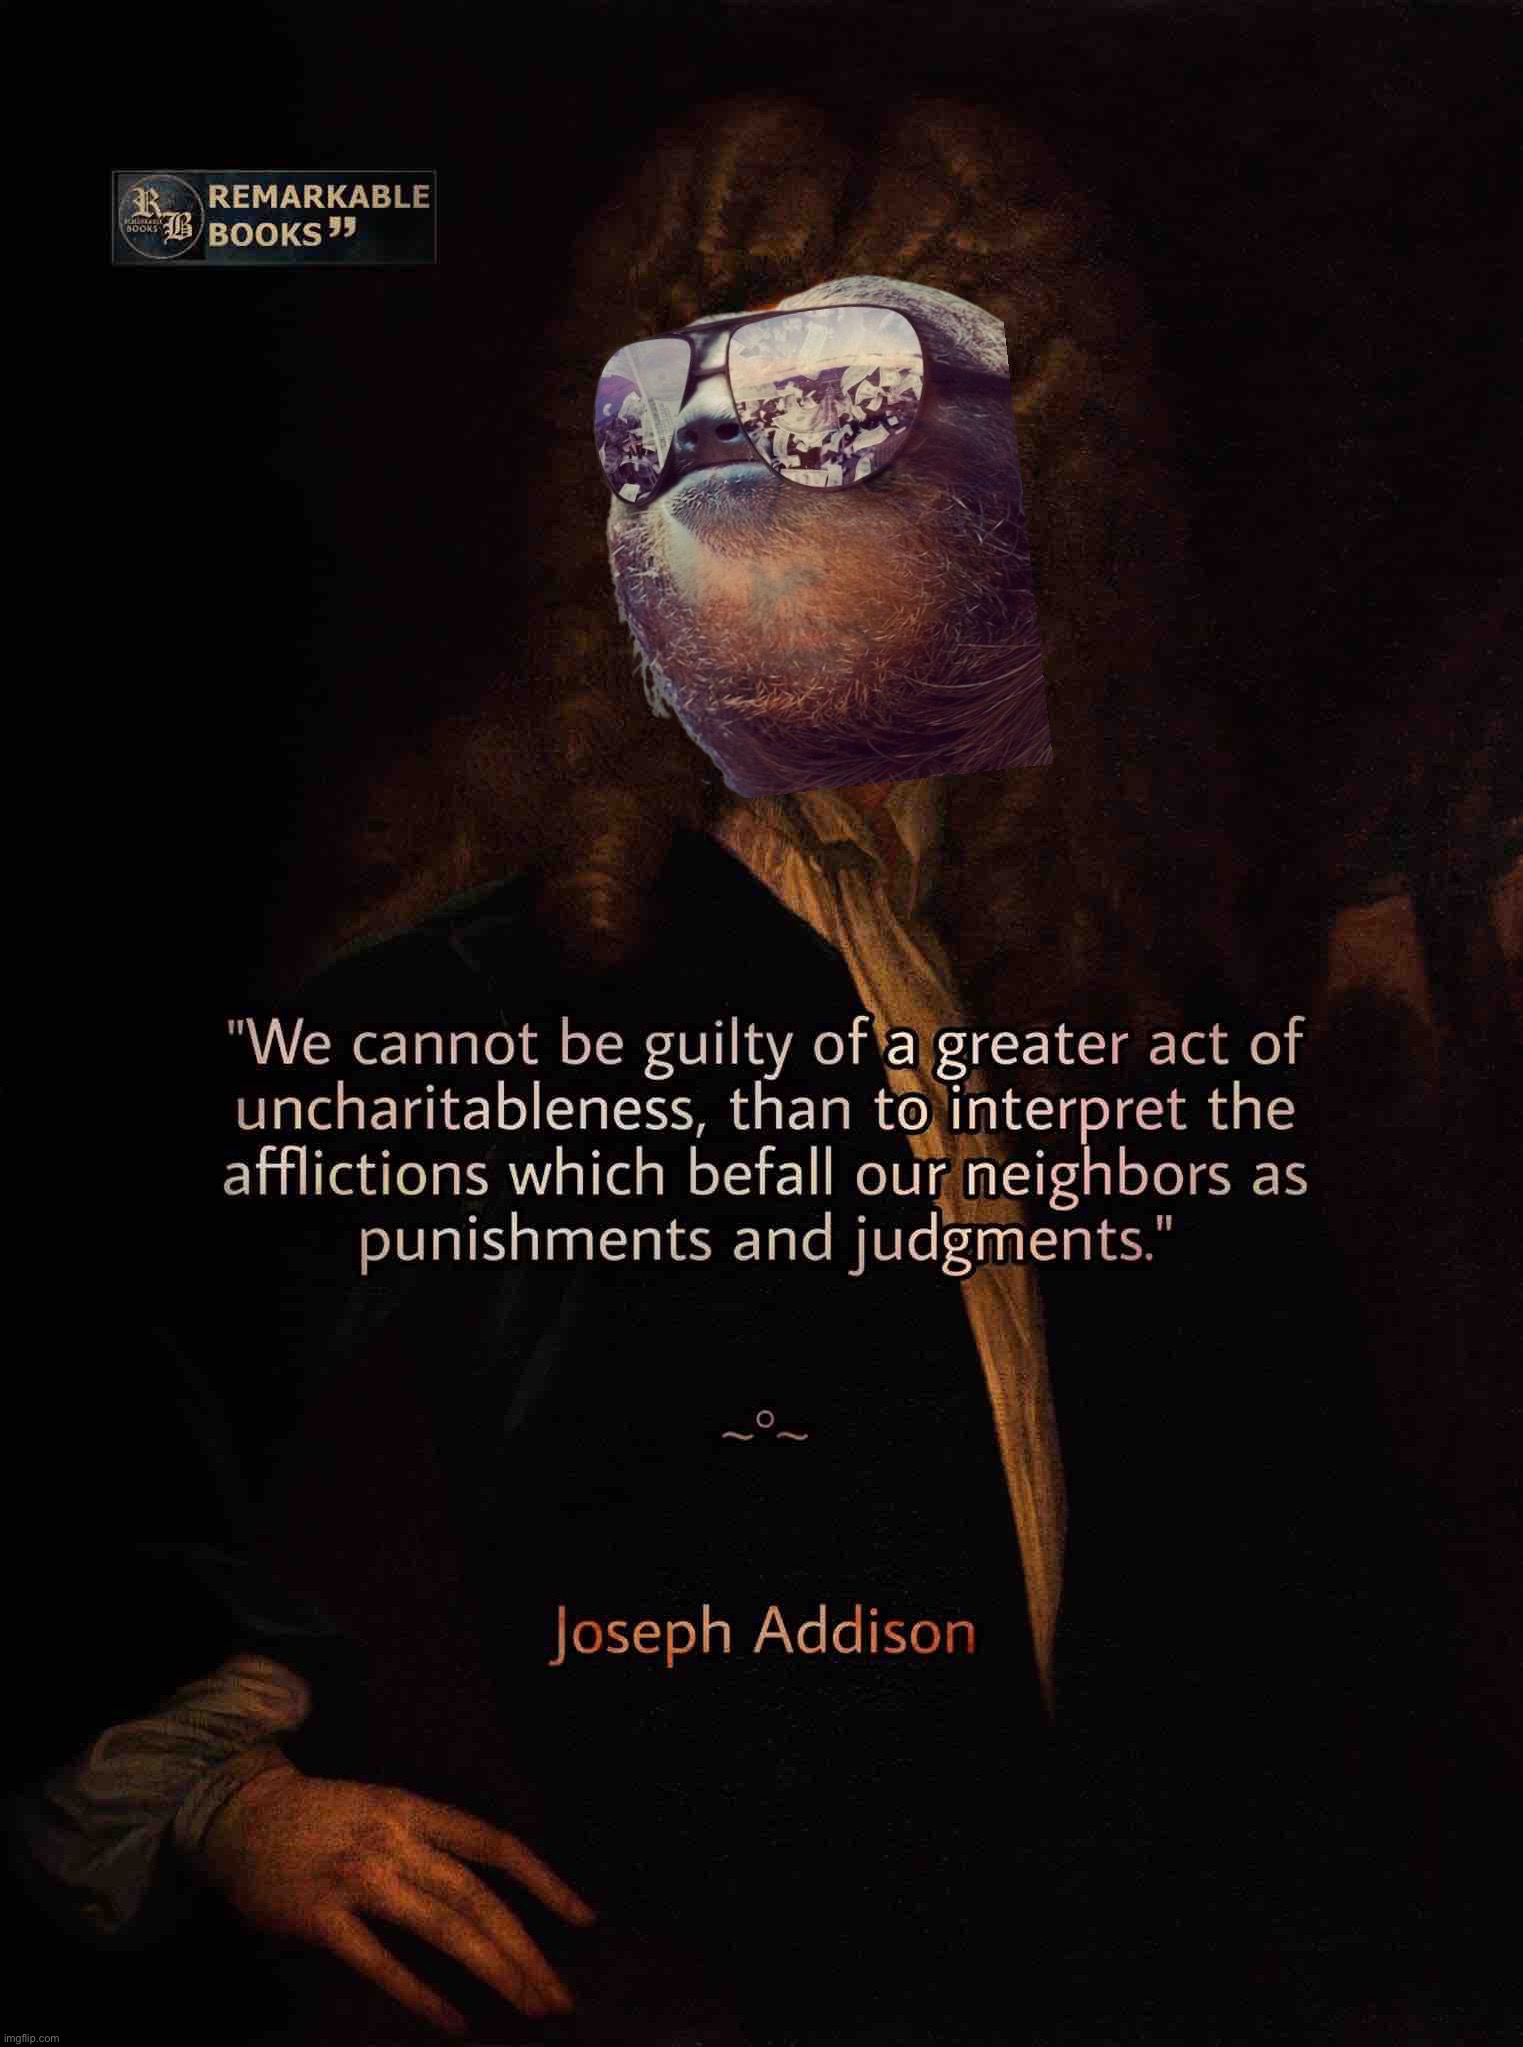 Joseph Addison quote | image tagged in joseph addison quote | made w/ Imgflip meme maker